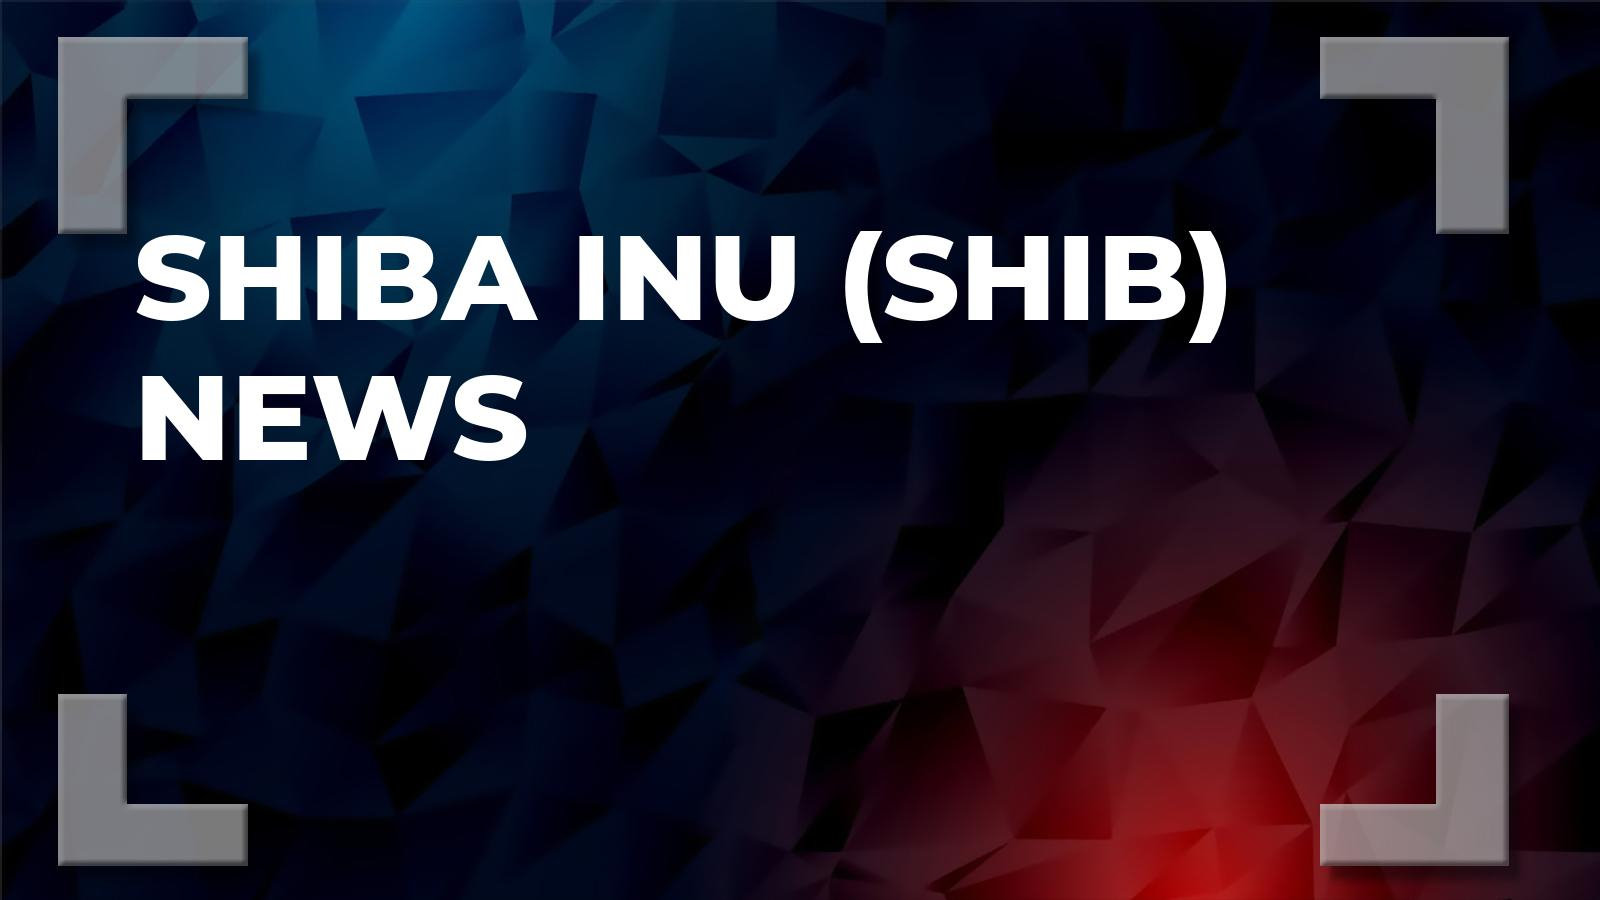 Shiba Inu (SHIB) News